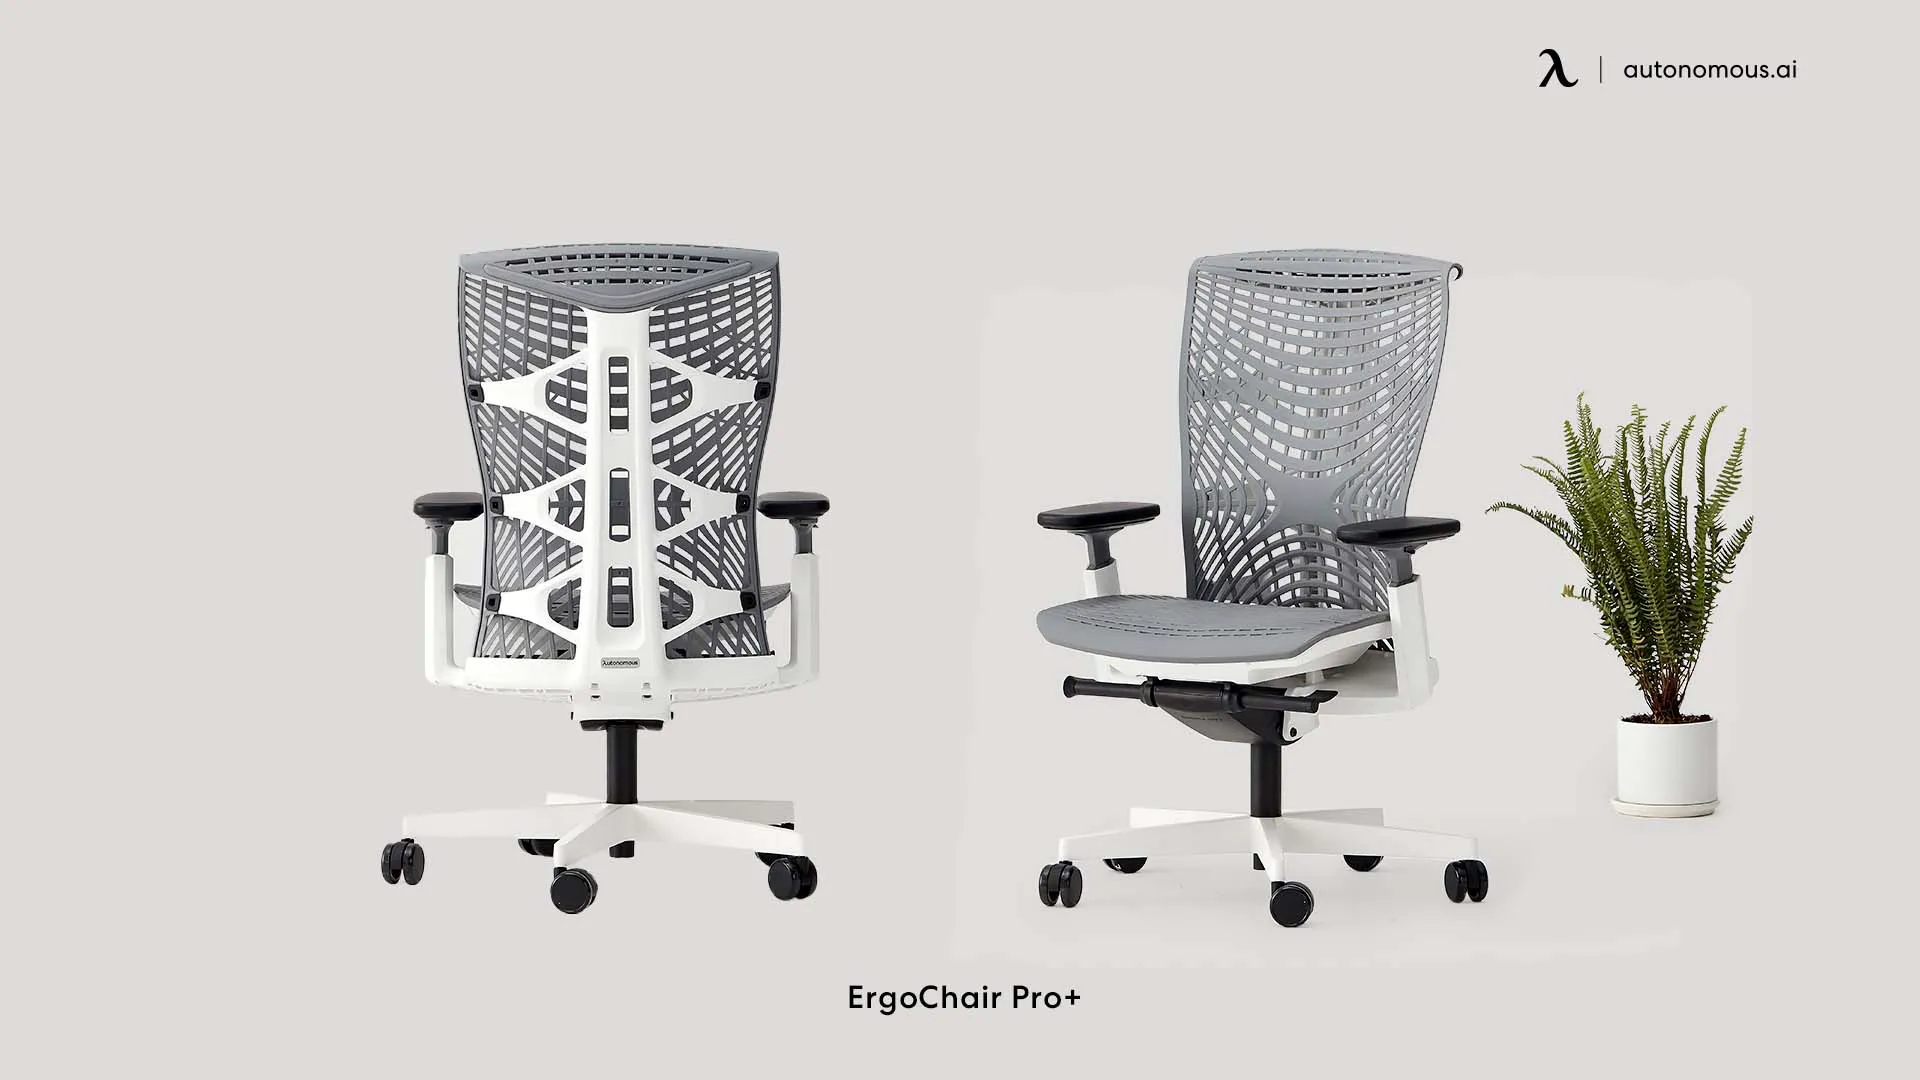 ErgoChair Pro+ adjustable height desk chair